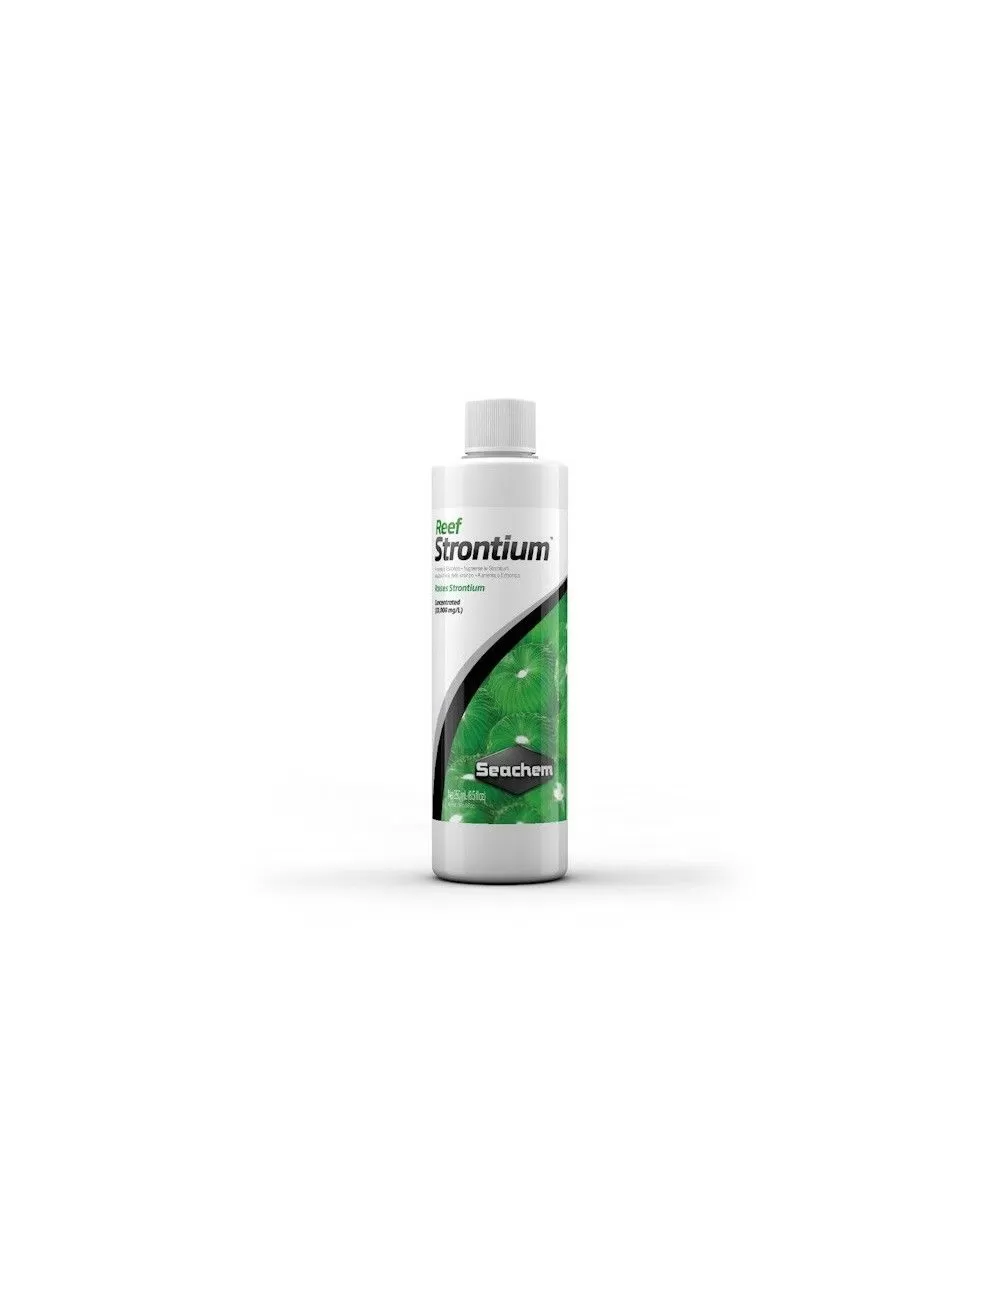 SEACHEM - Reef Strontium - 250ml - Strontium supplement